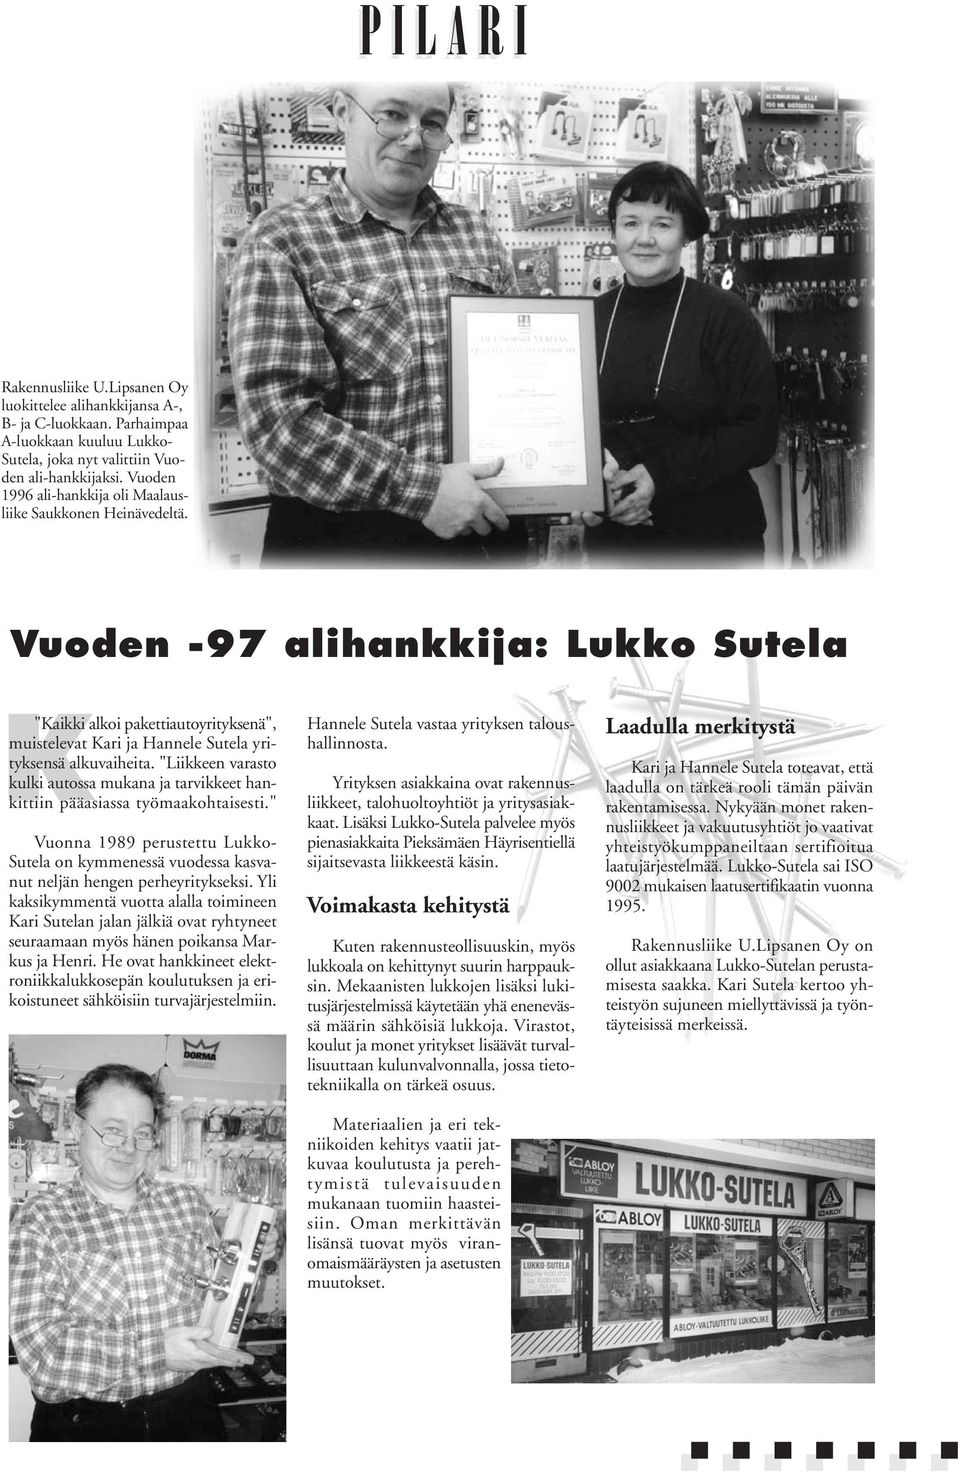 Vuoden -97 alihankkija: Lukko Sutela "Kaikki alkoi pakettiautoyrityksenä", muistelevat Kari ja Hannele Sutela yrityksensä alkuvaiheita.